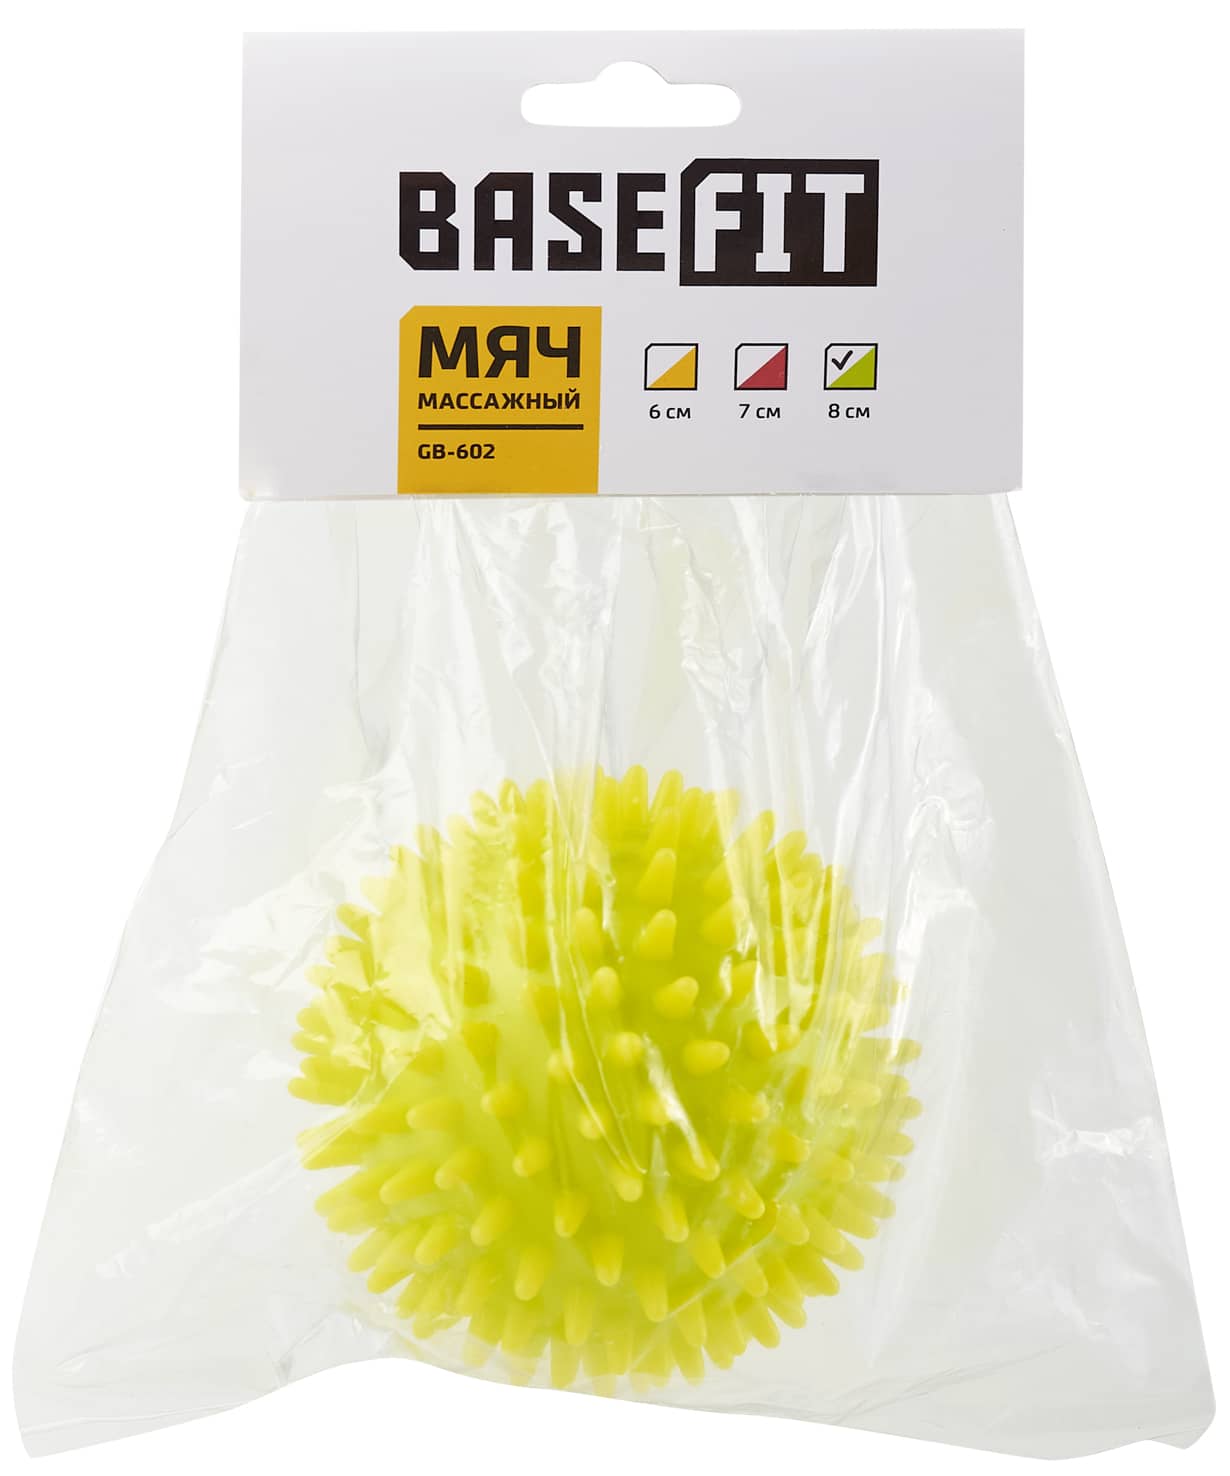 Мяч массажный BaseFit GB-602 8 см, лаймовый 1230_1476